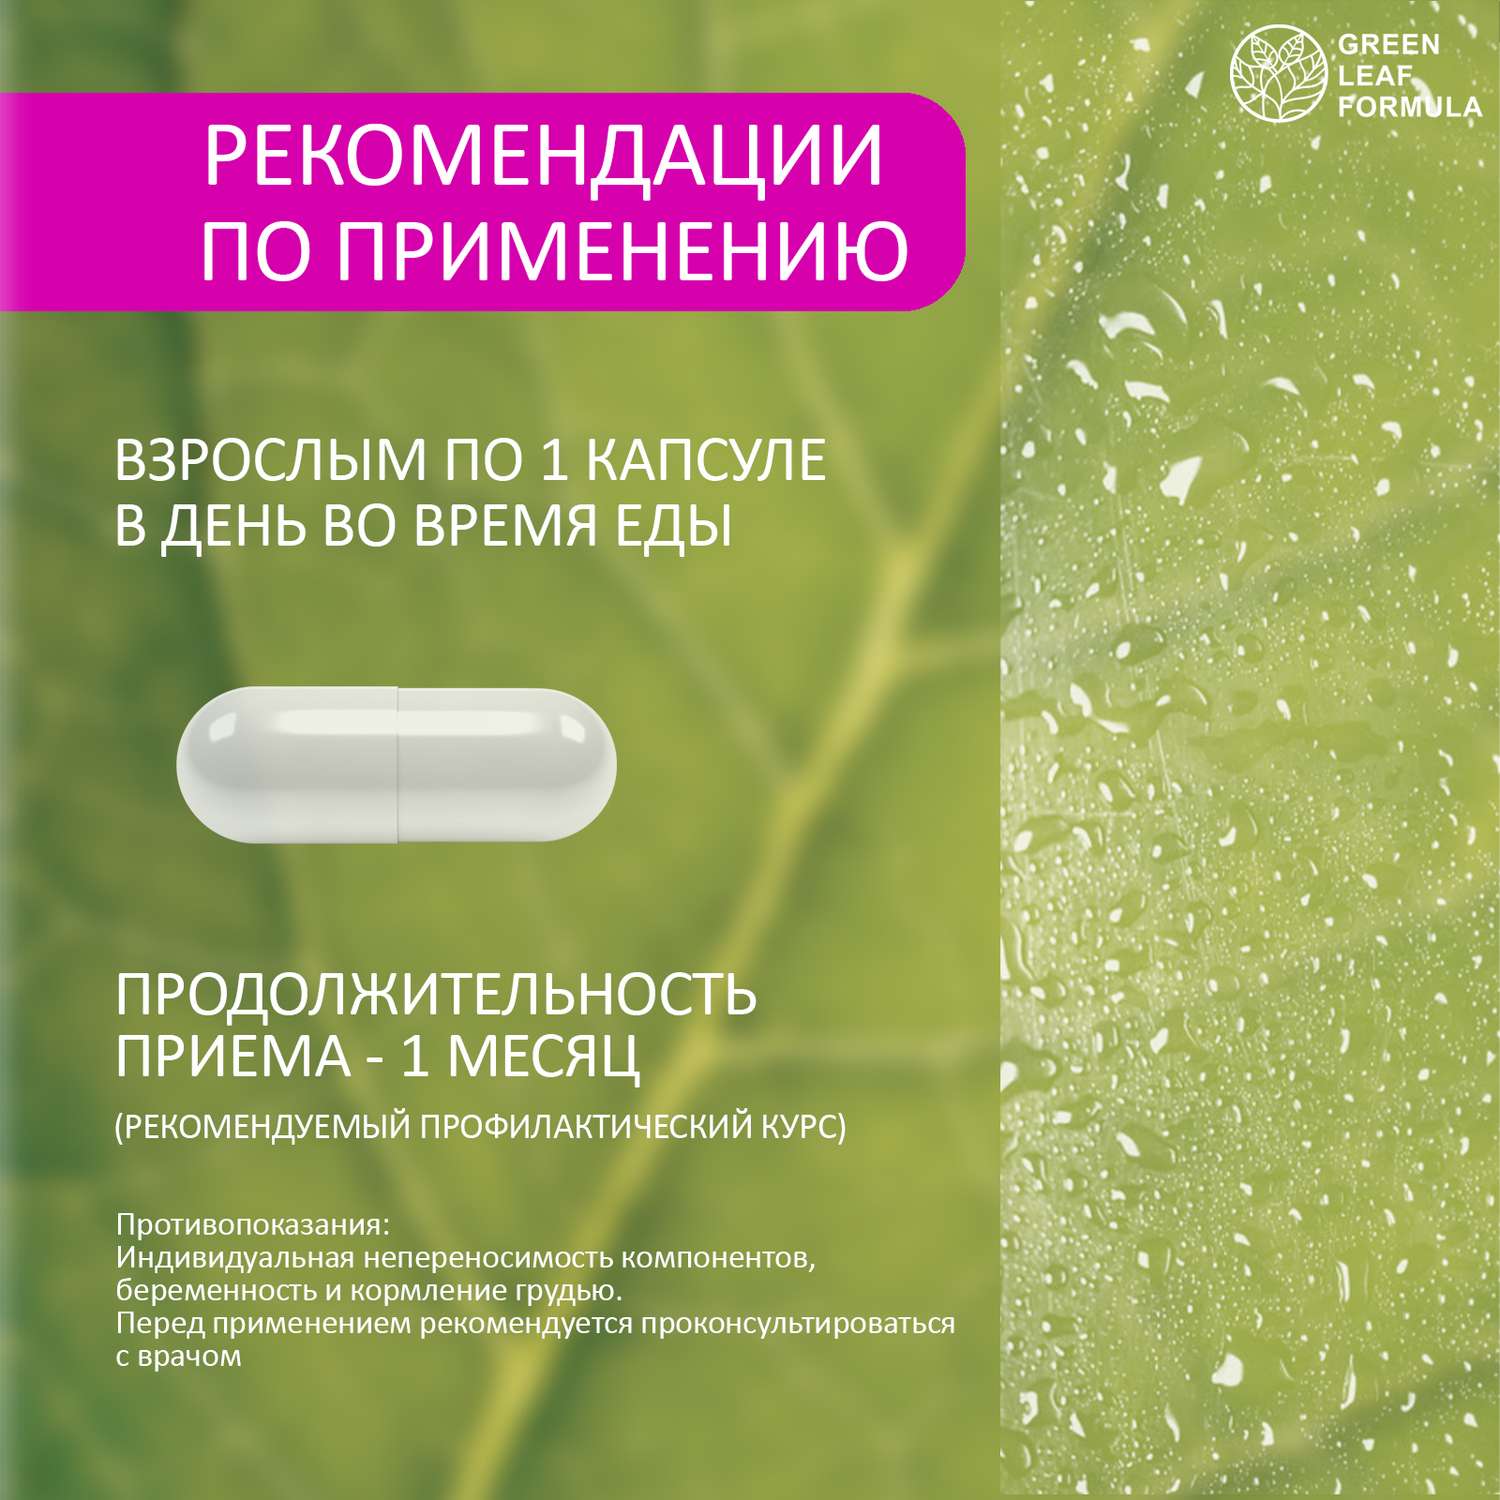 Витамины для нервной системы Green Leaf Formula триптофан 5 HTP 100 мг от стресса и депрессии для мозга для настроения 2 банки - фото 16